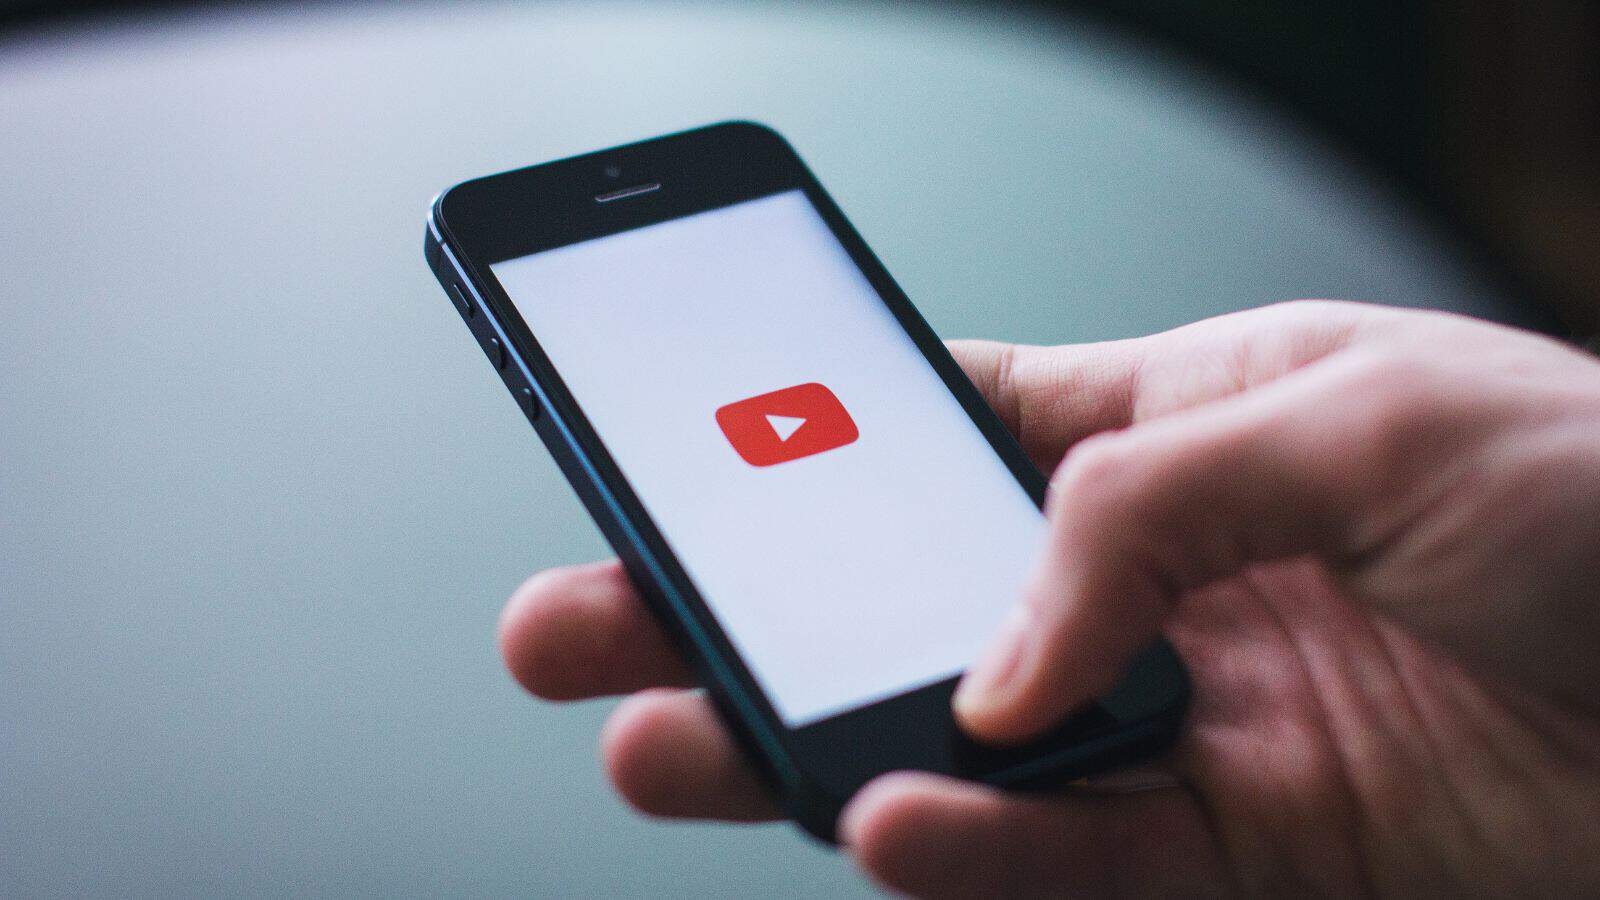 YouTube: sempre più aspra la lotta con gli adblocker